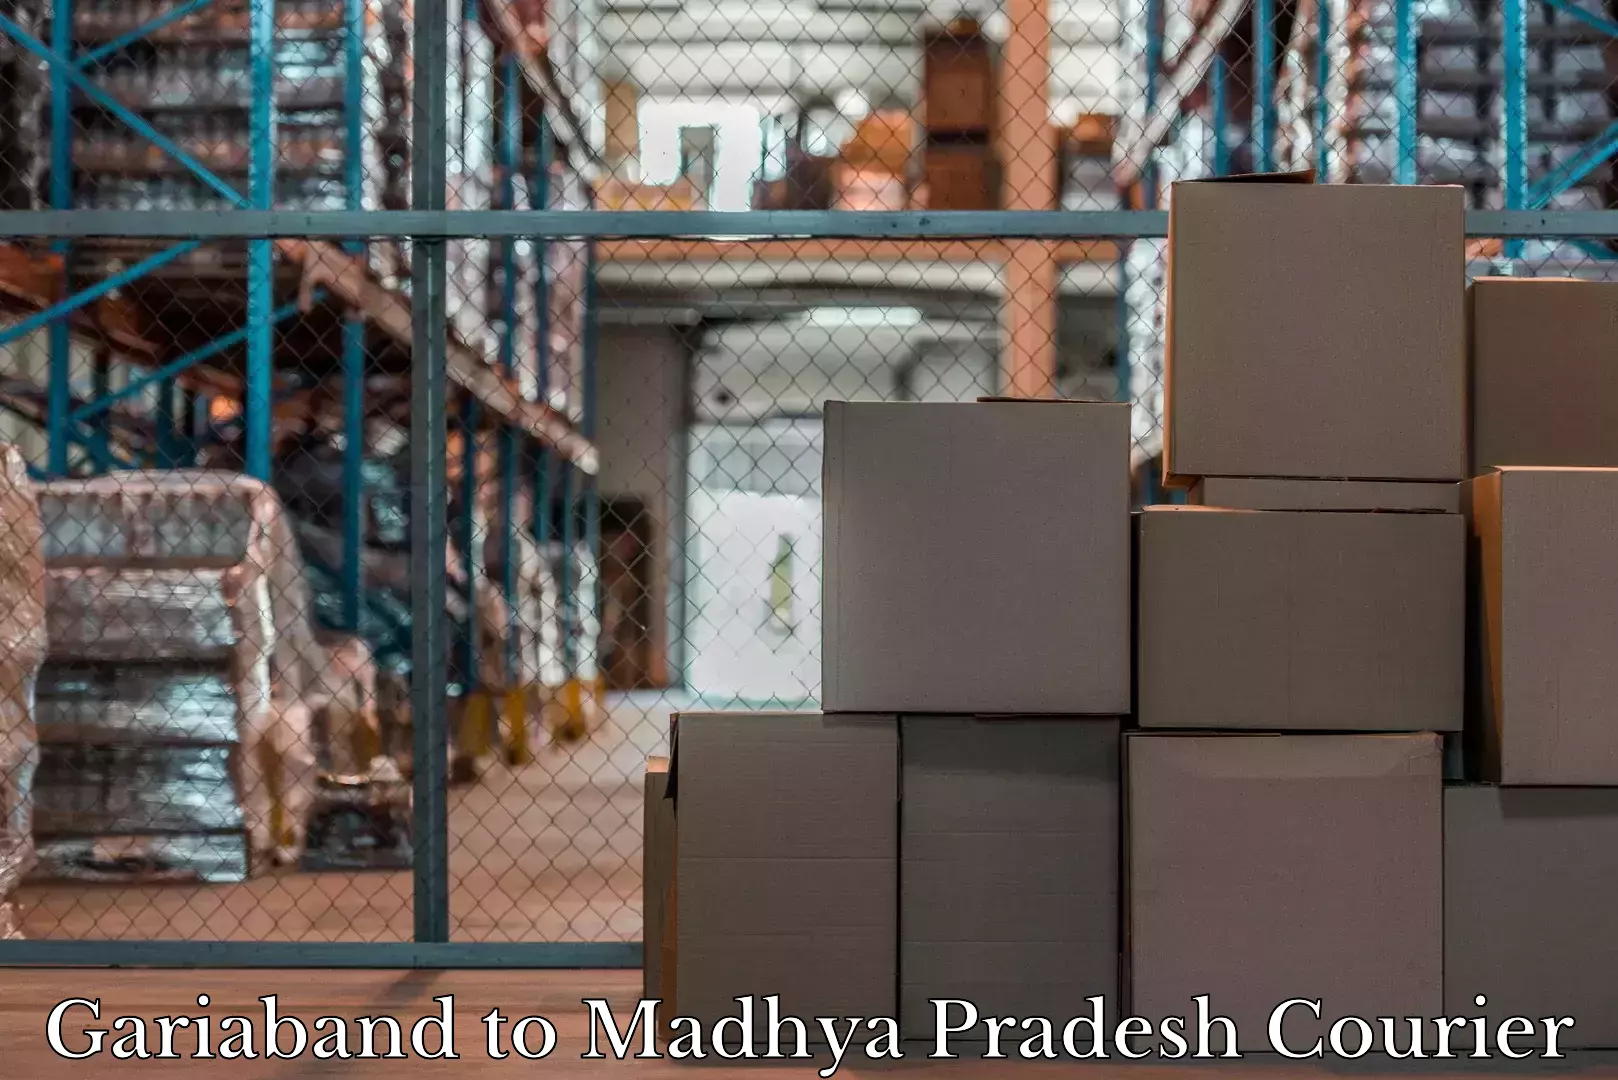 Baggage shipping experts Gariaband to Chandla